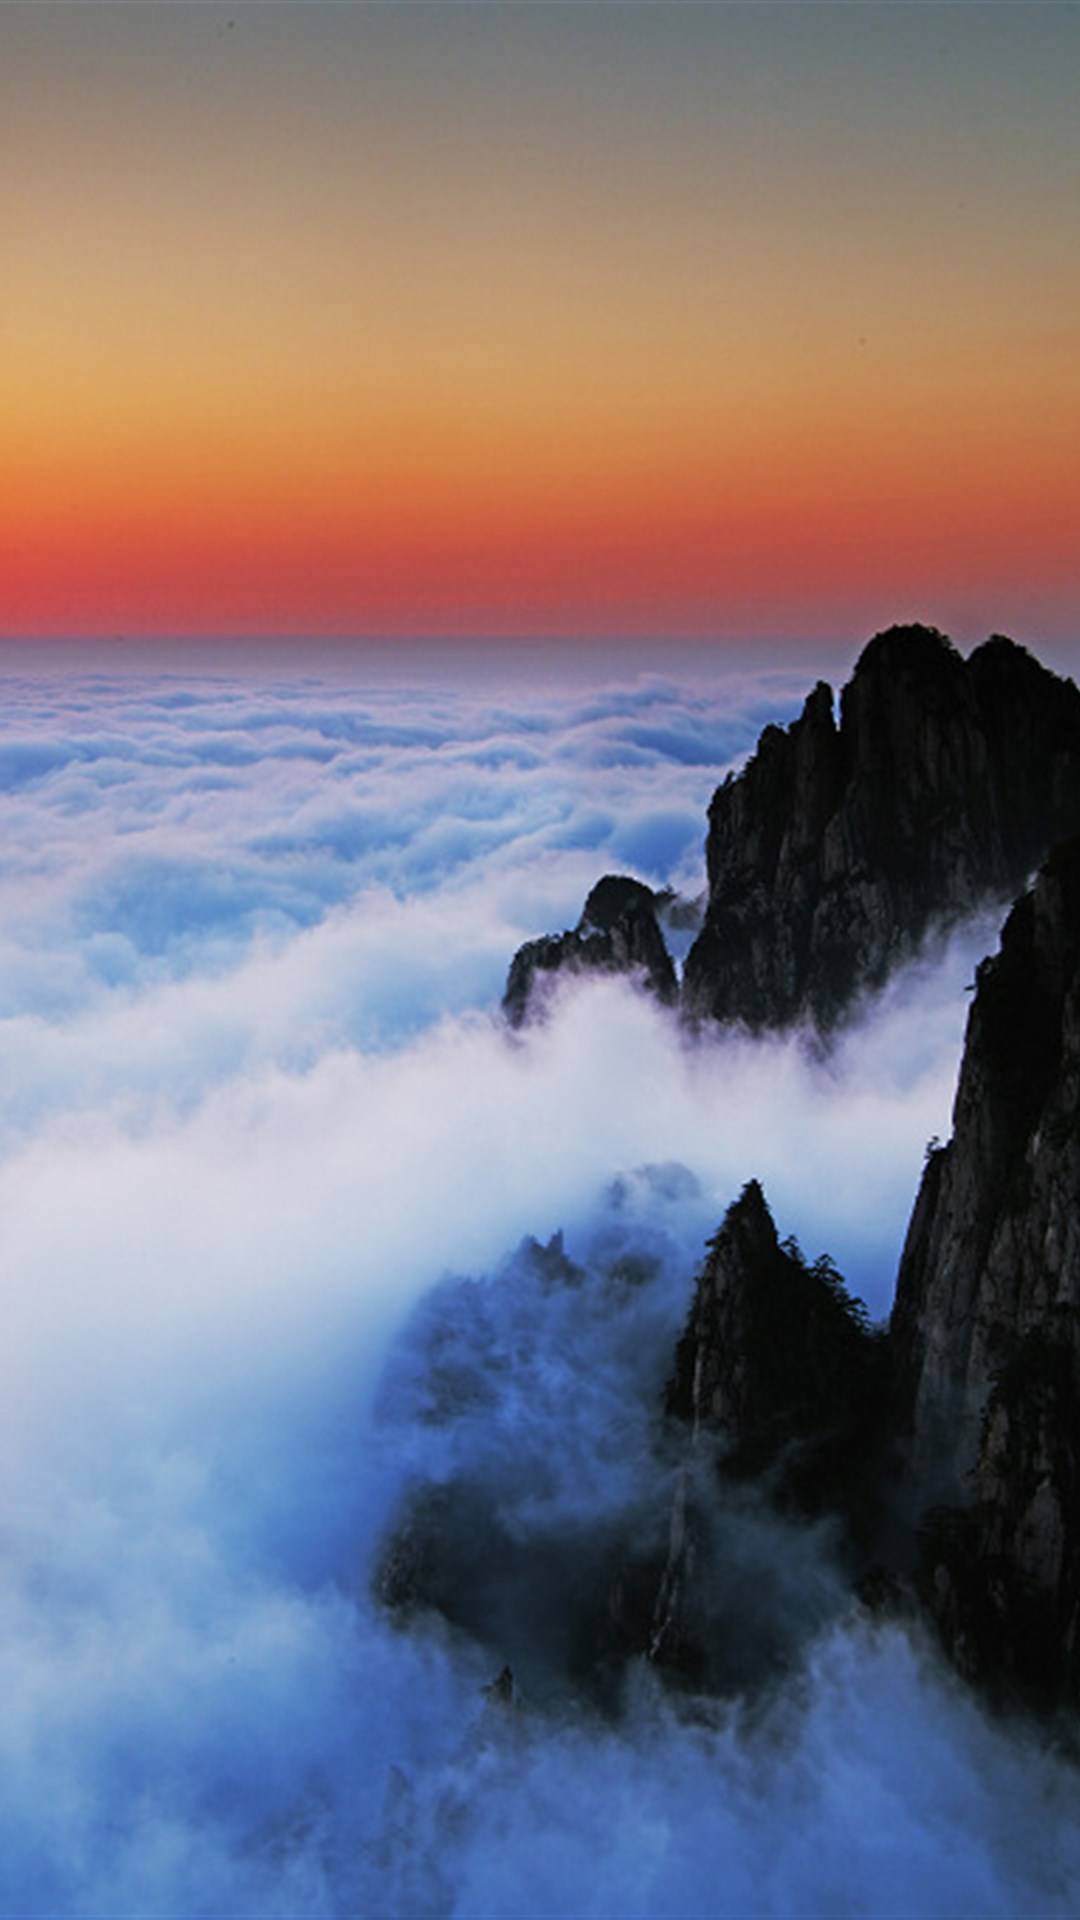 中国最美的十个地方图片